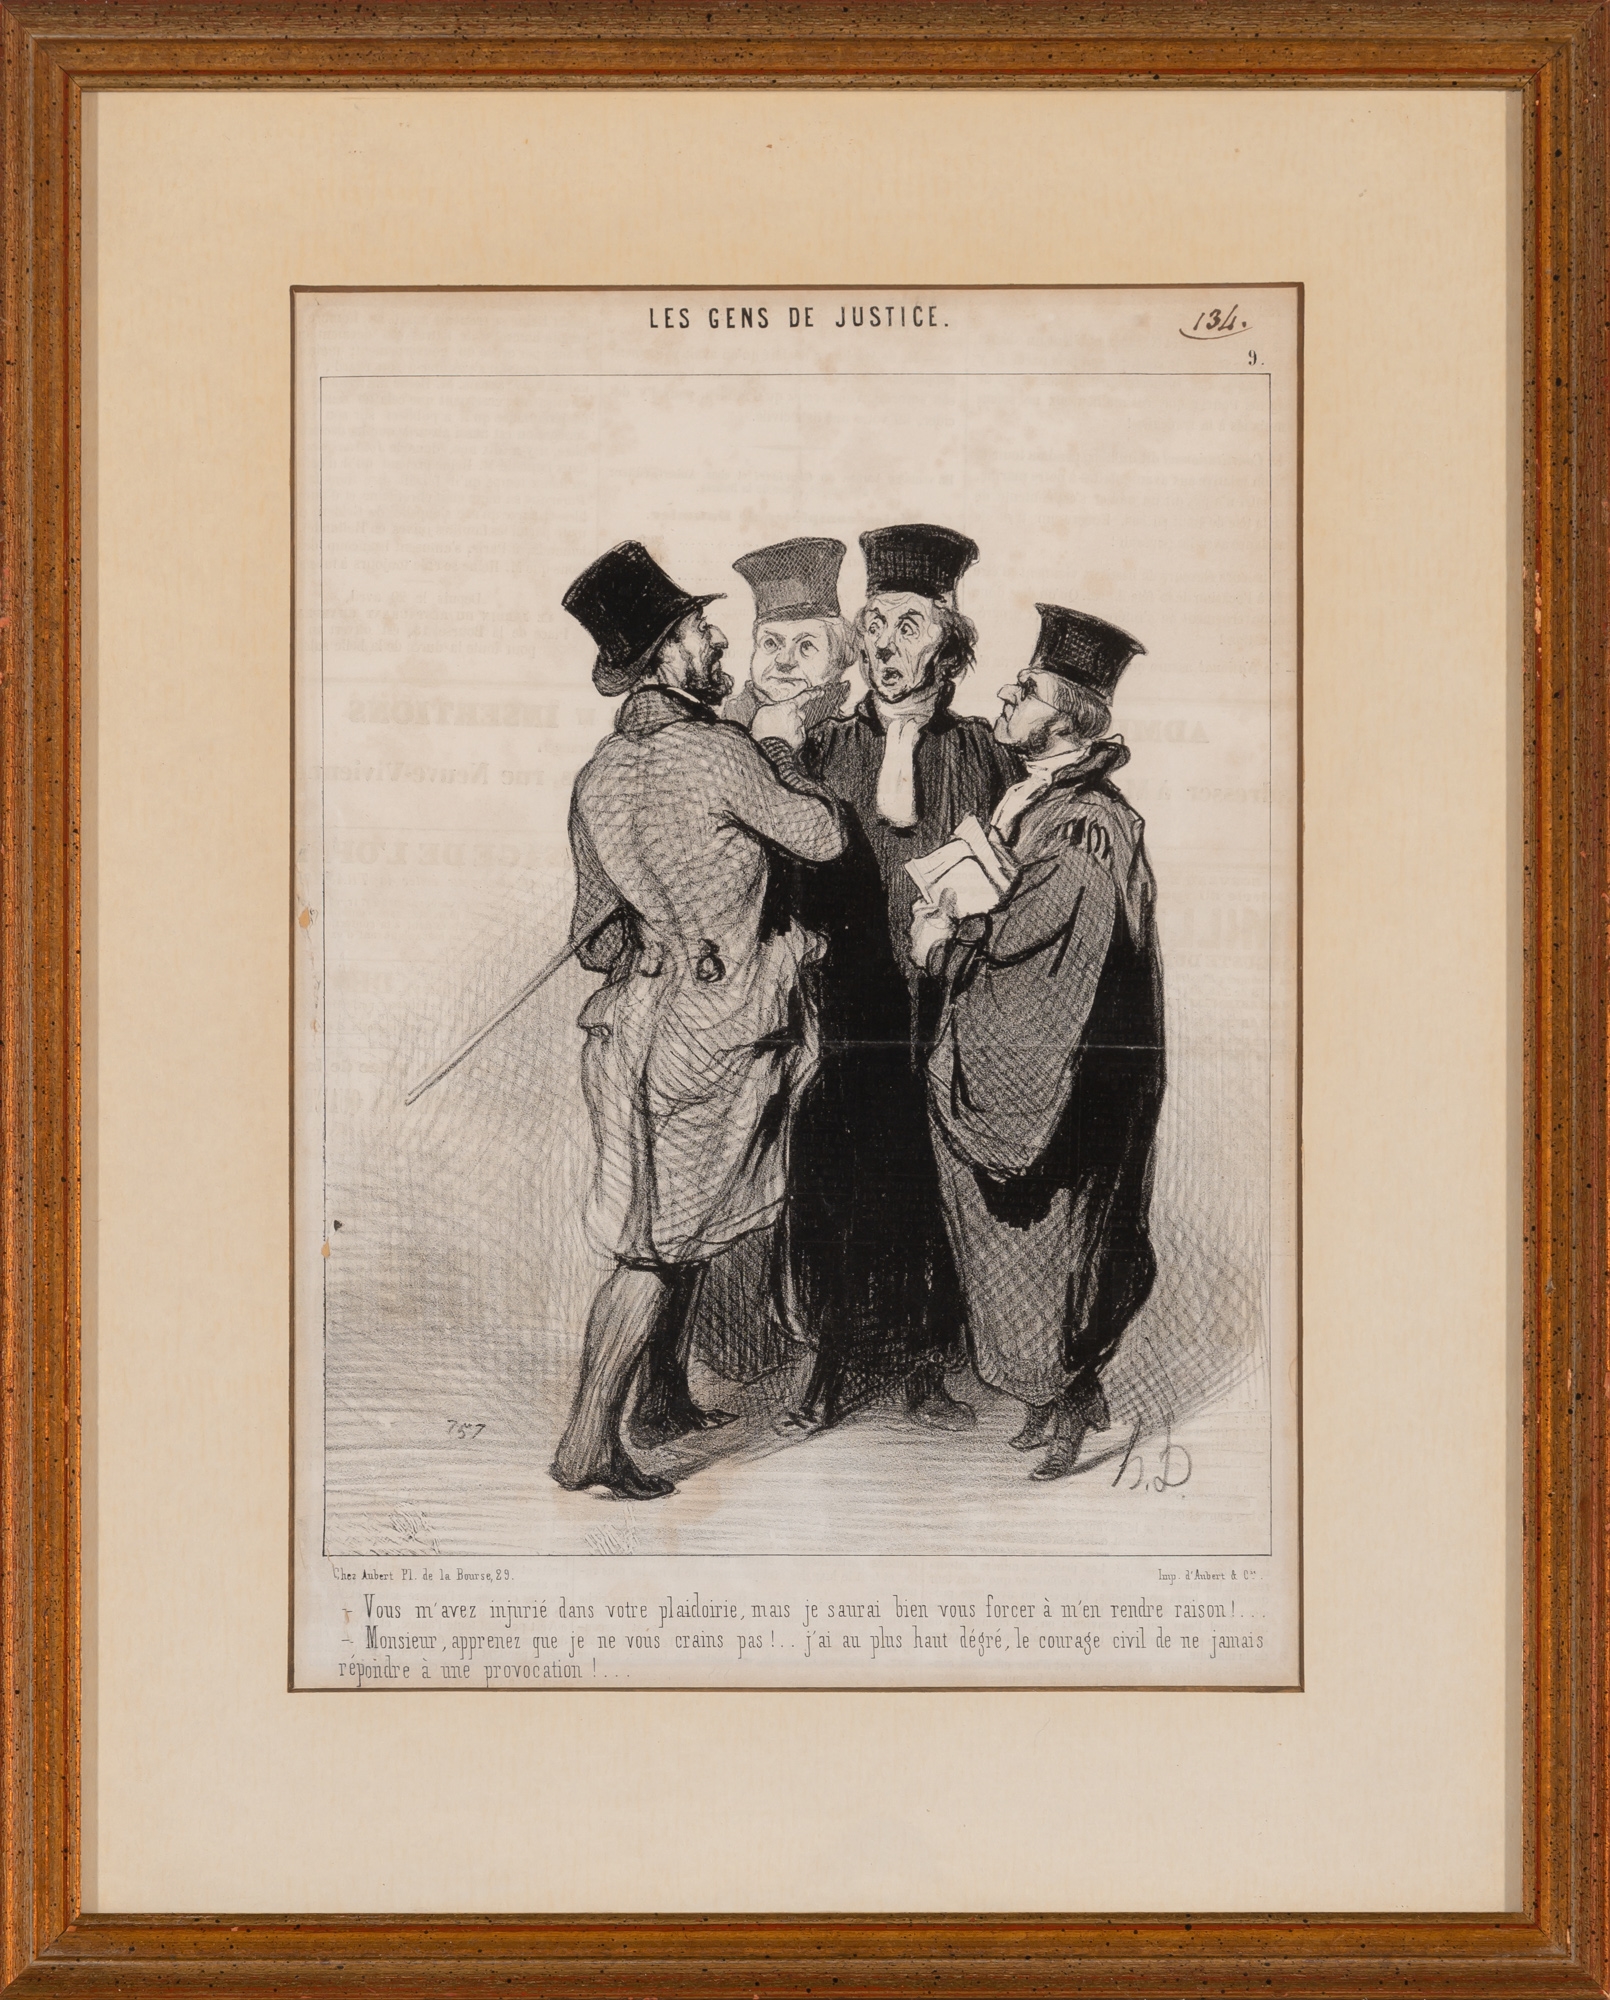 Honoré Daumier, LES GENS DE JUSTICE